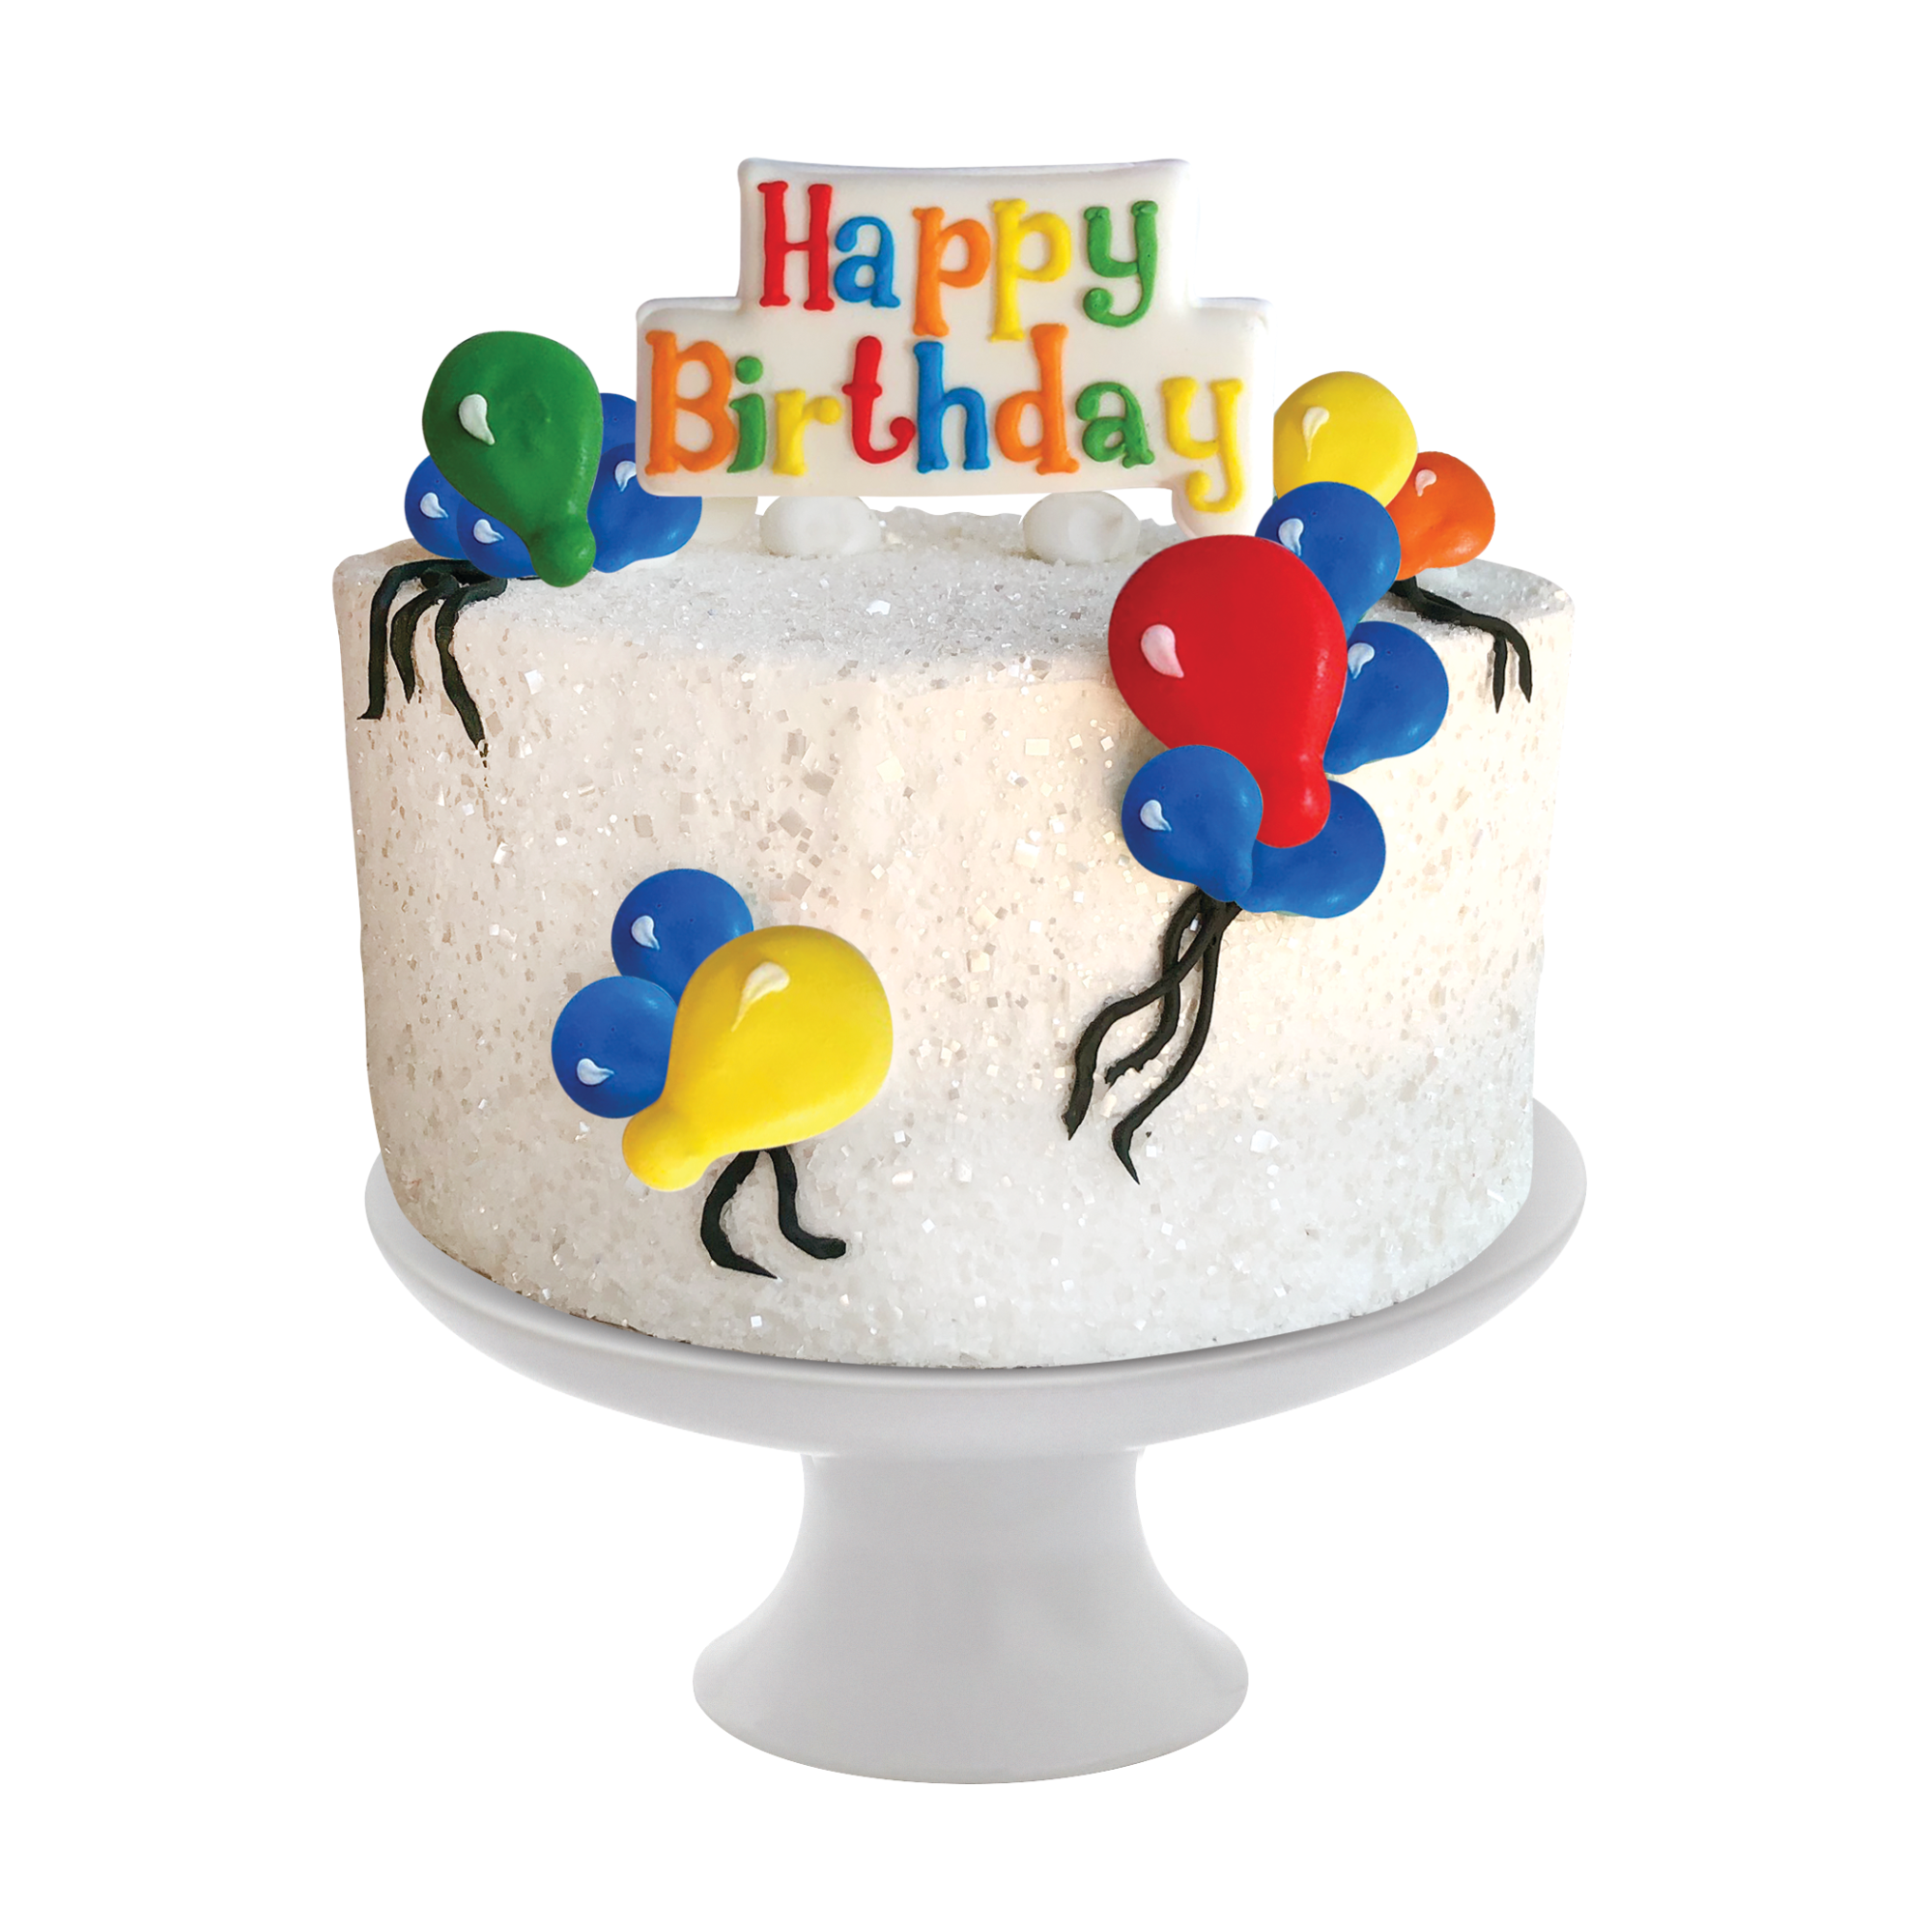 Happy Birthday Designer Cake Decor